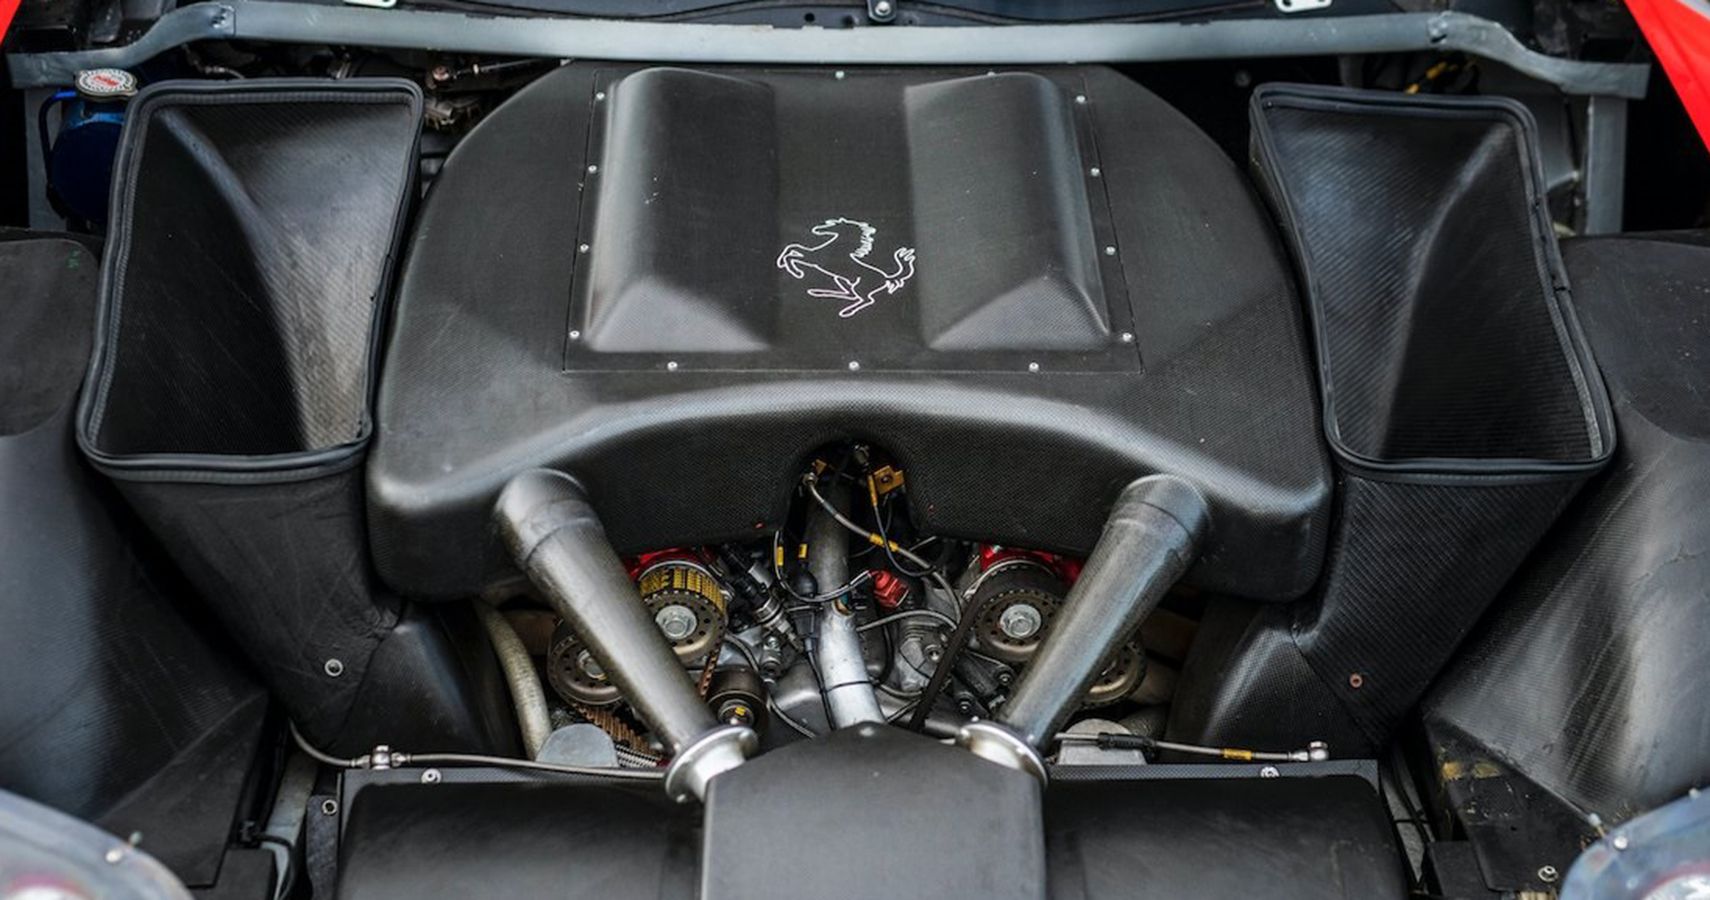 Ferrari 550 GTC 2102 V12 engine